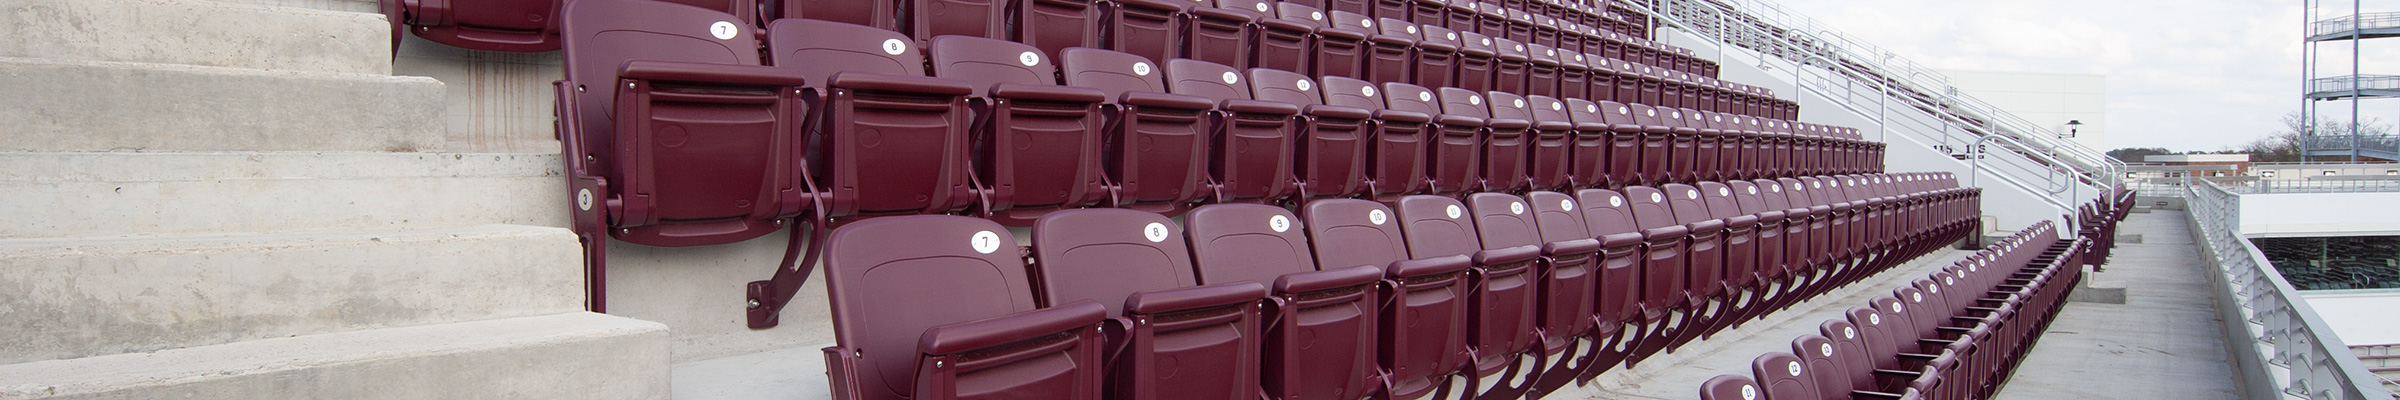 Davis Wade Stadium spectator seating